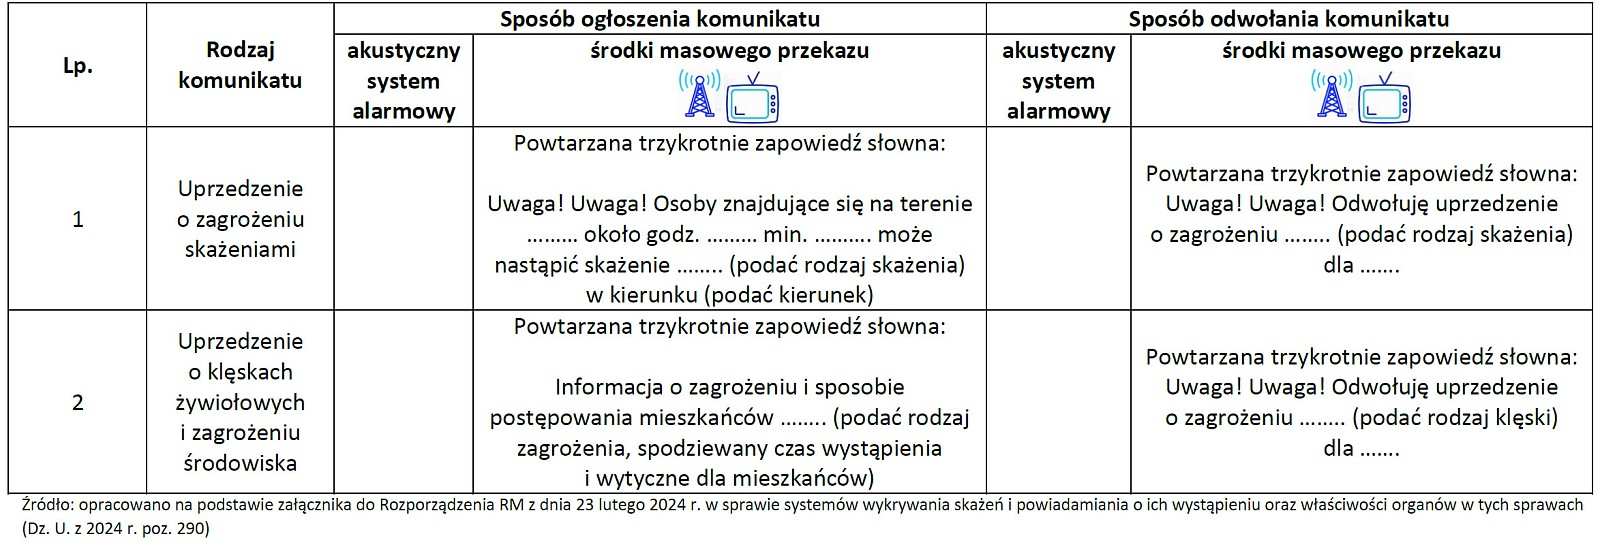 komunikaty-ostrzegawcze-obowiązujące-na-Terytorium-Rzeczypospolitej-Polskiej.jpg [367.73 KB]